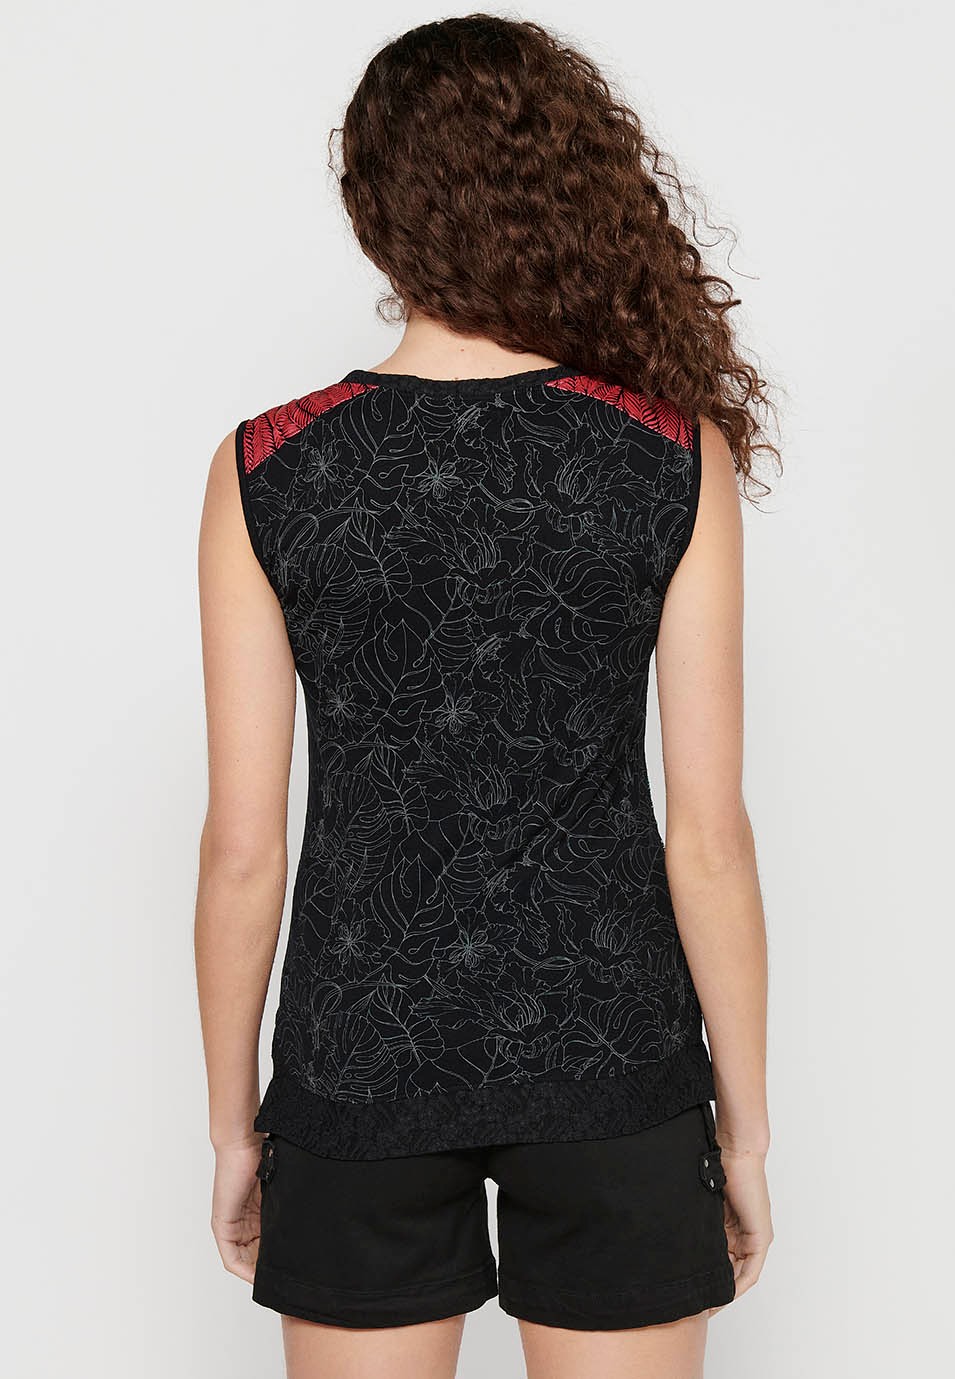 Camiseta sin mangas con Bordado floral delantero y Cuello redondo de Color Negro para Mujer 7